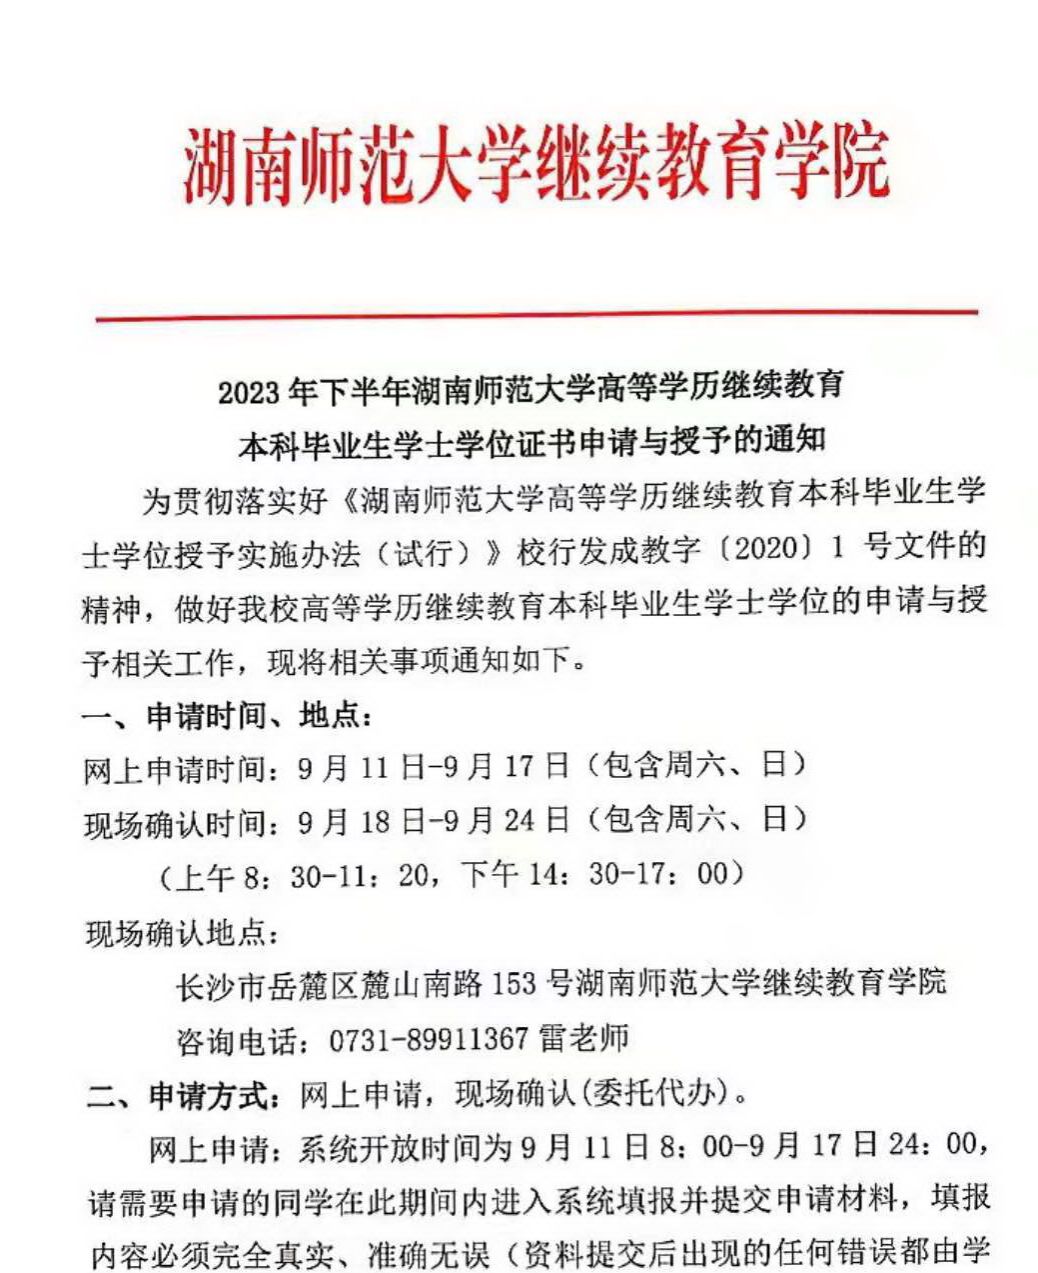 2023年下半年湖南师范大学高等学历继续教育本科毕业生学士学位证书申请与授予的通知(图1)